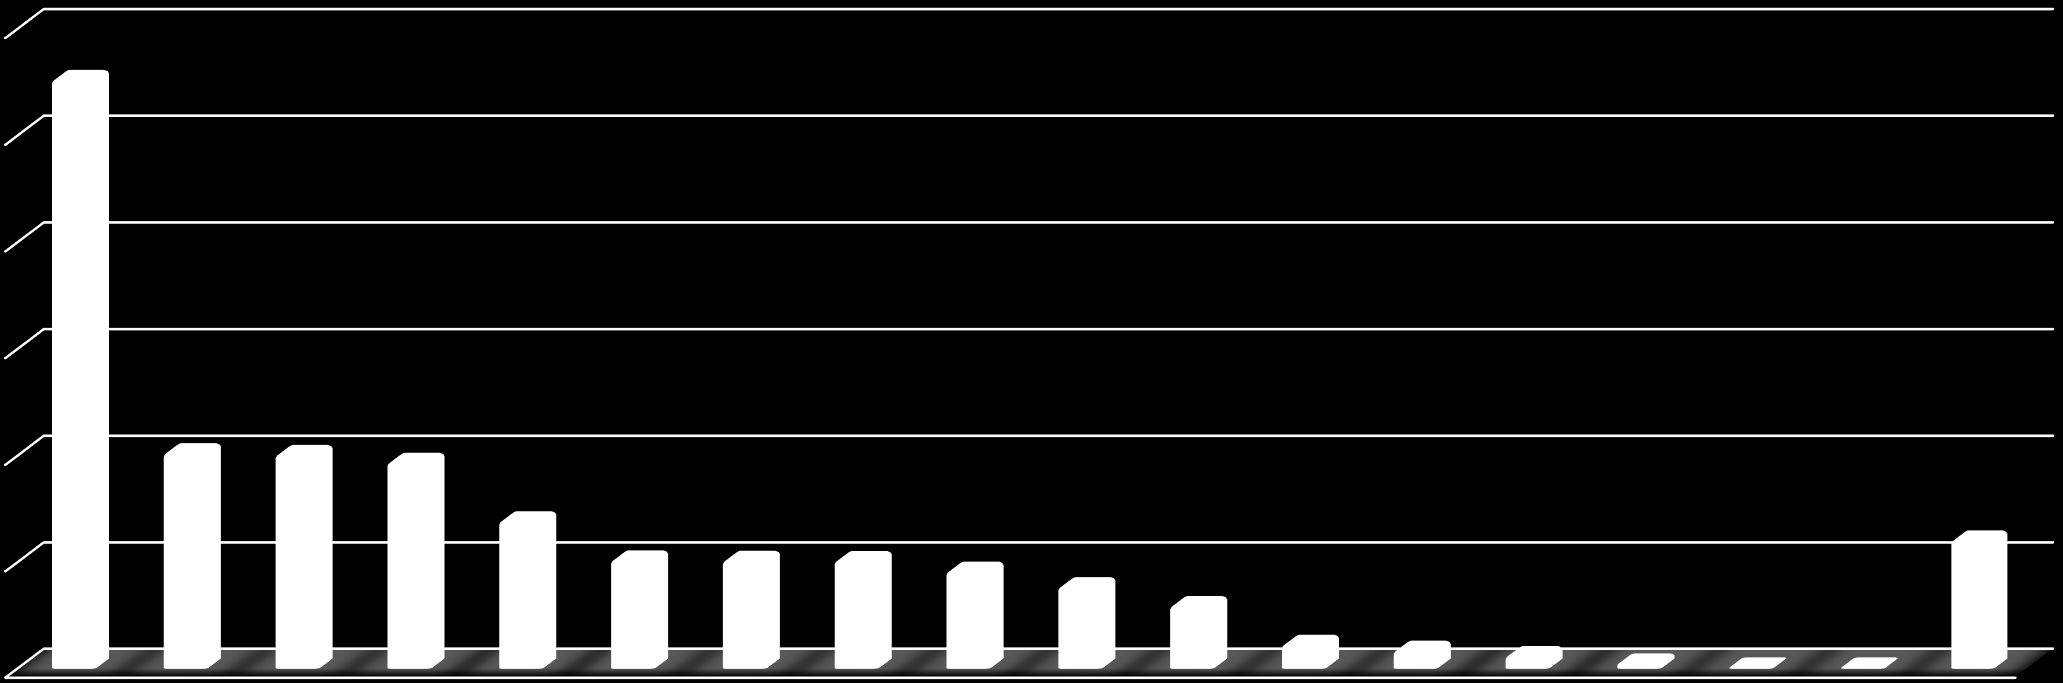 TASA DE MORTALIDAD LABORAL EN COLOMBIA POR SECTOR ECONÓMICO - 2014 0,030% 0,028% 0,025% 0,020% 0,015% 0,010% 0,010% 0,010% 0,010% 0,007% 0,006% 0,005% 0,005% 0,005% 0,005% 0,005% 0,004% 0,003% 0,001%